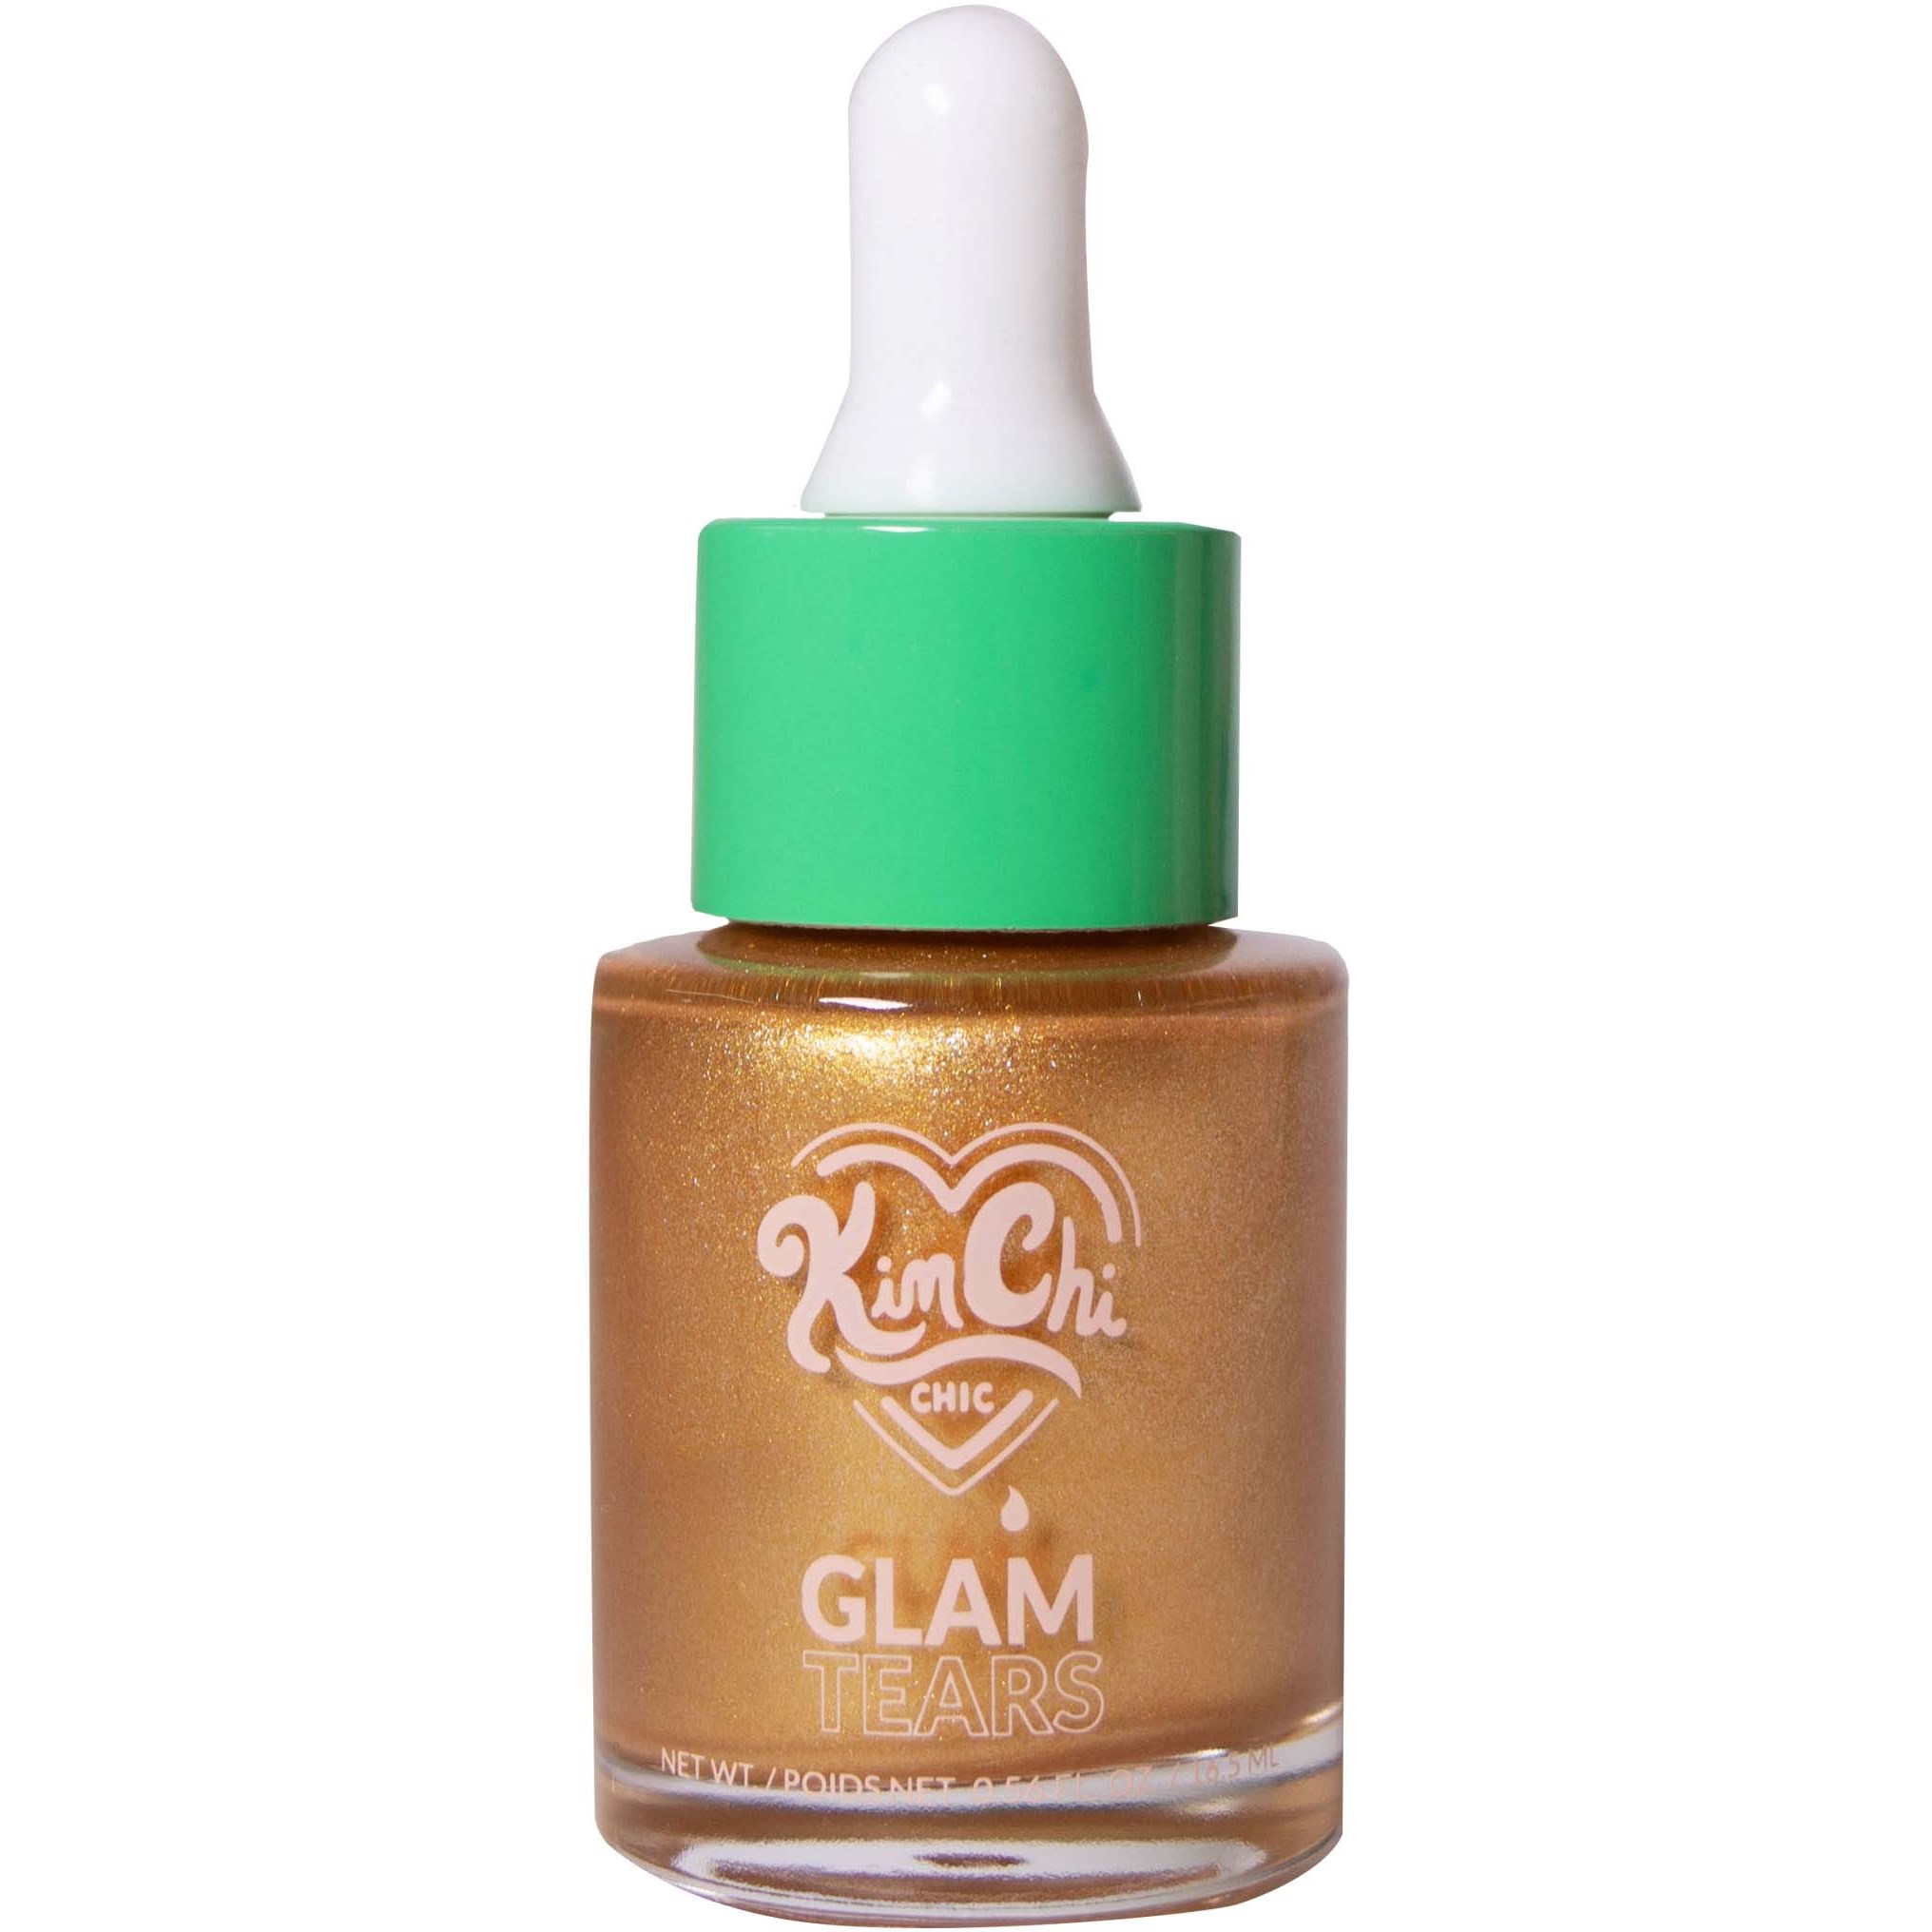 Läs mer om KimChi Chic Glam Tears Liquid Highlighter Gold